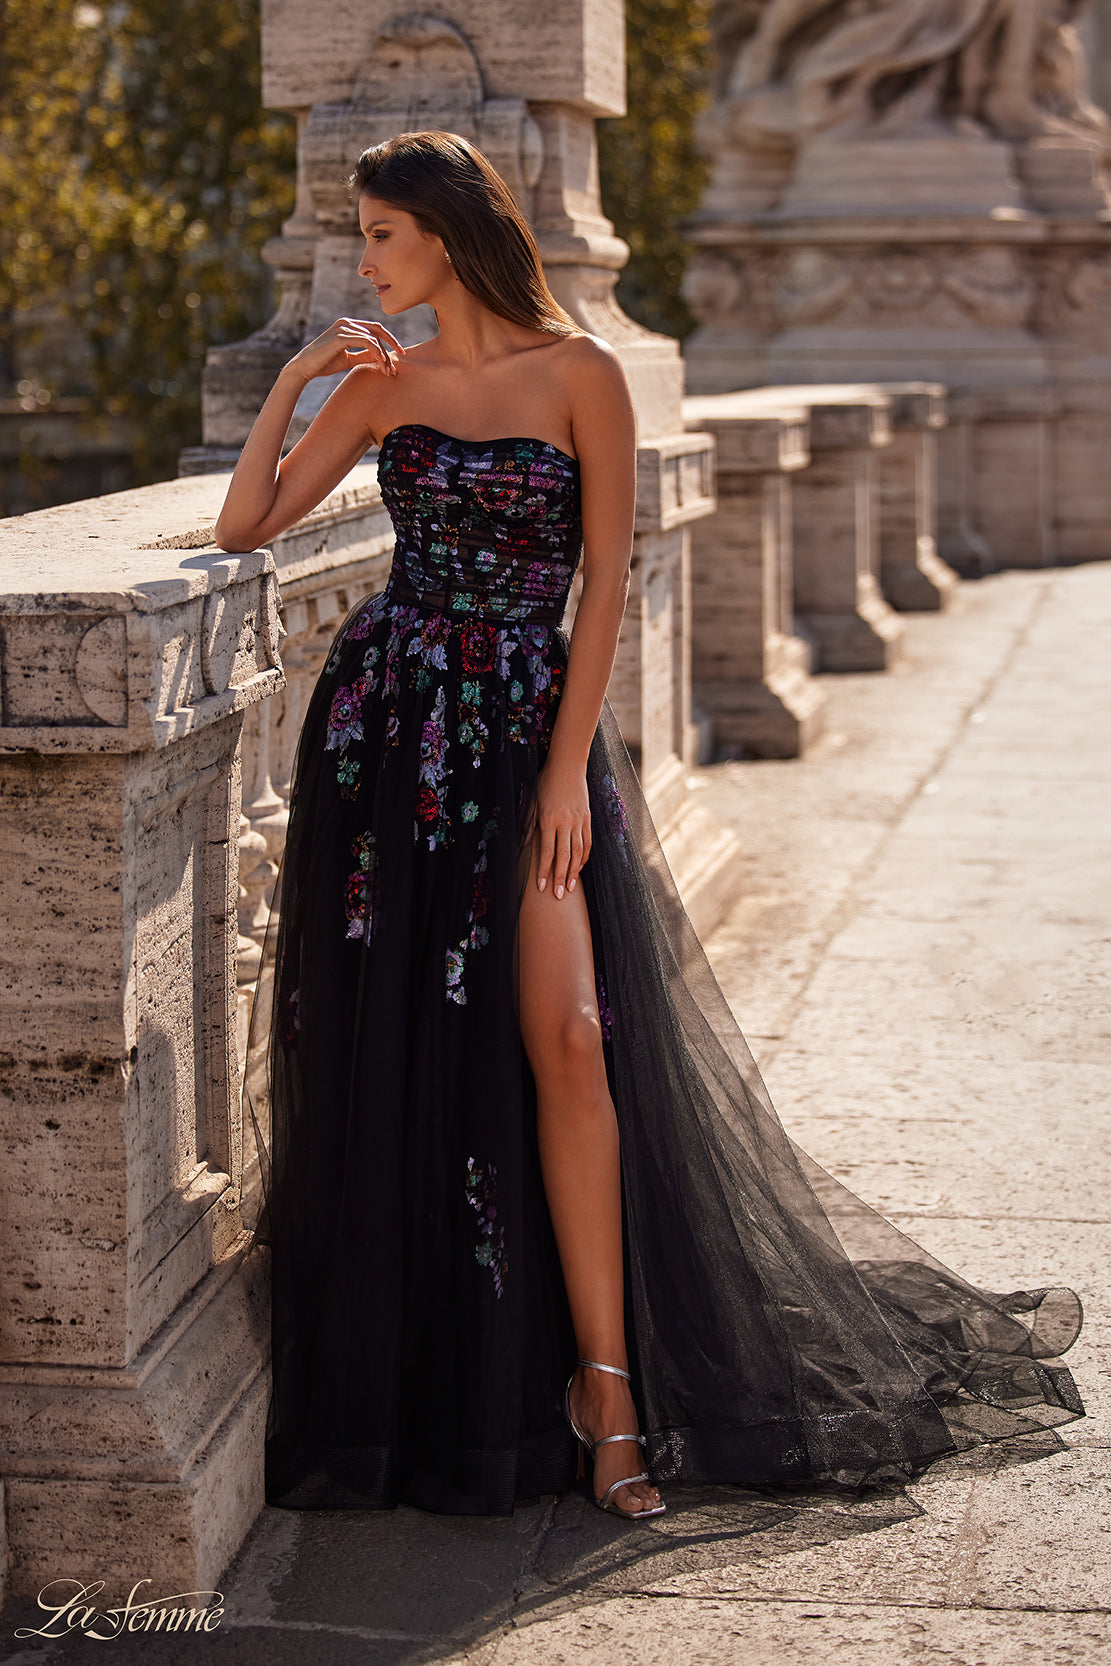 Samara Lace-Up High Slit Sequin Formal Dress